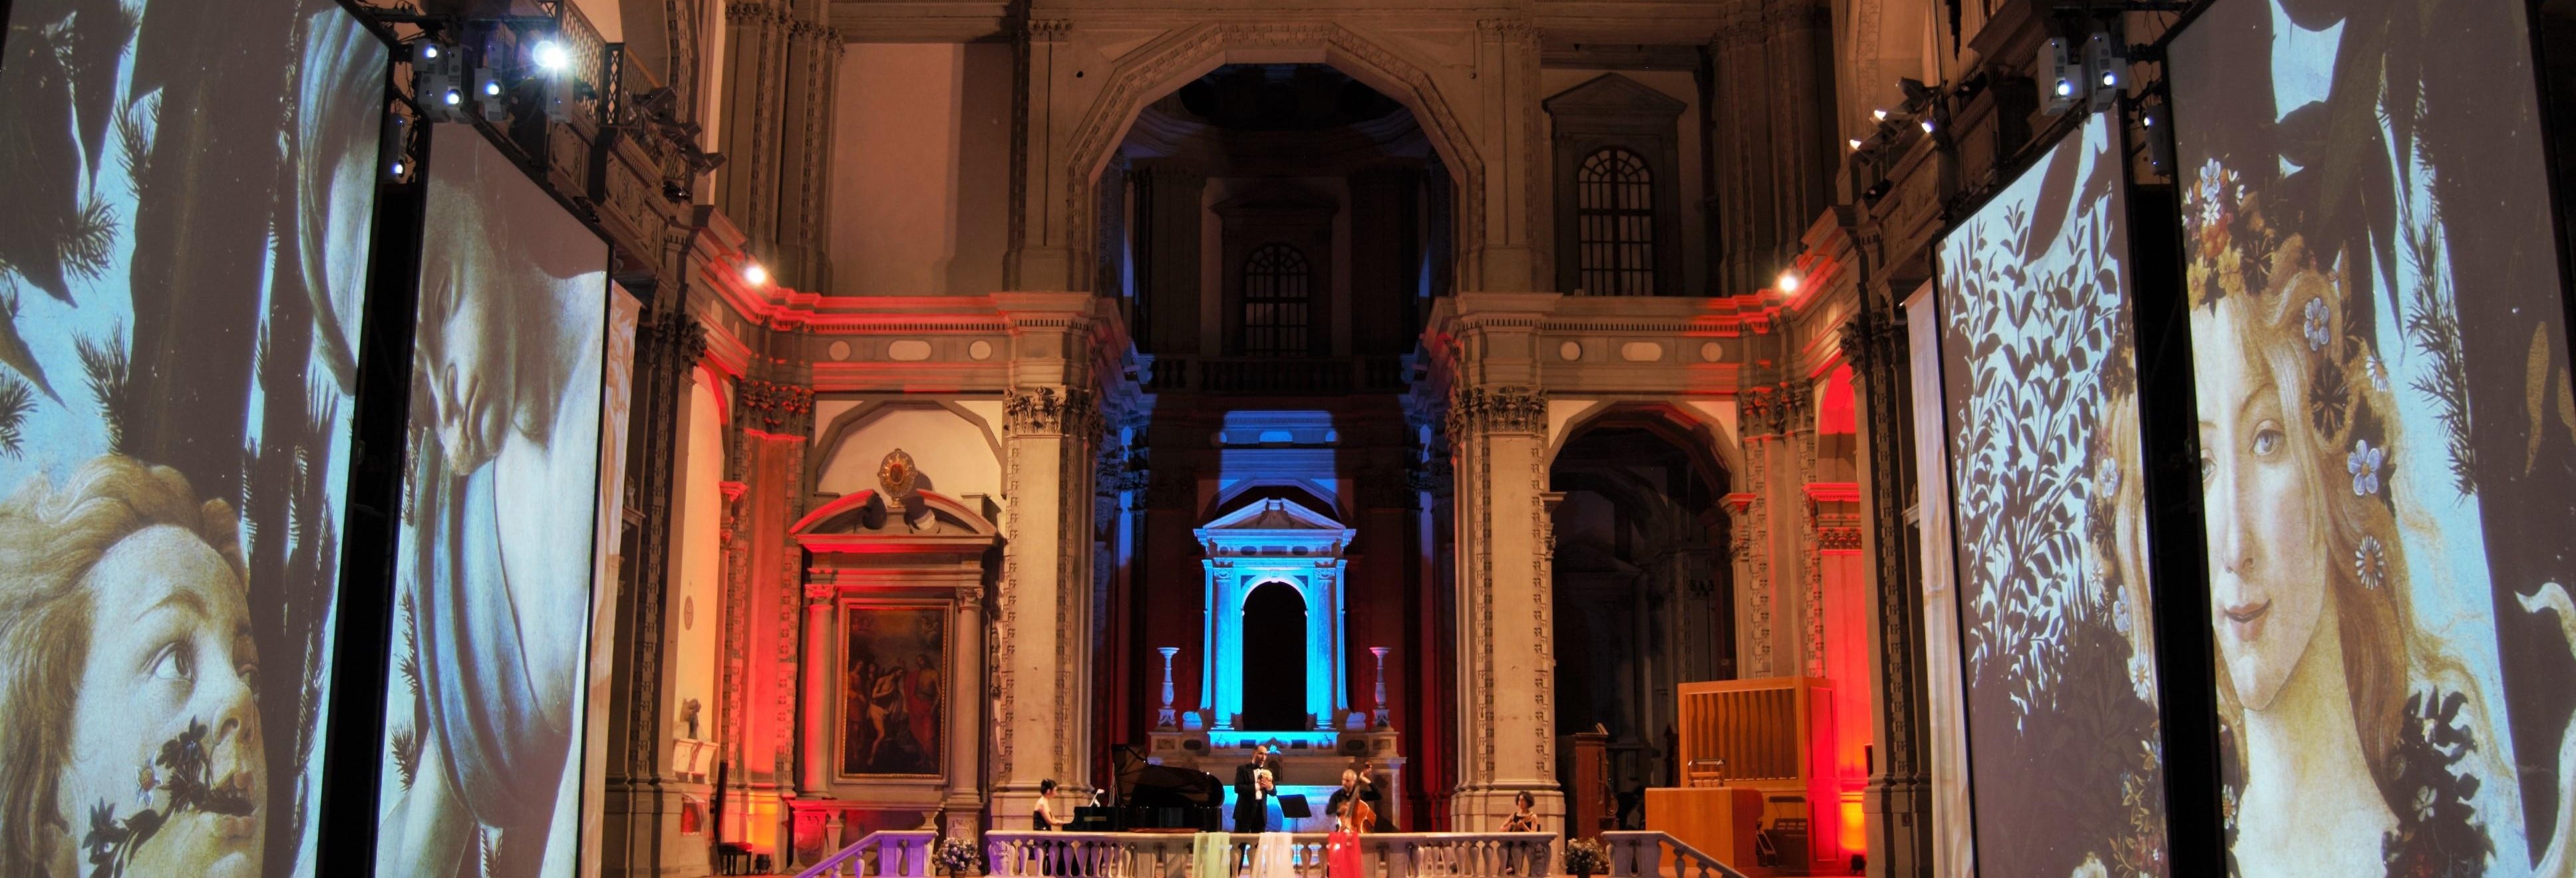 Concert opéra dans l'église Santo Stefano près du Ponte Vecchio, Florence